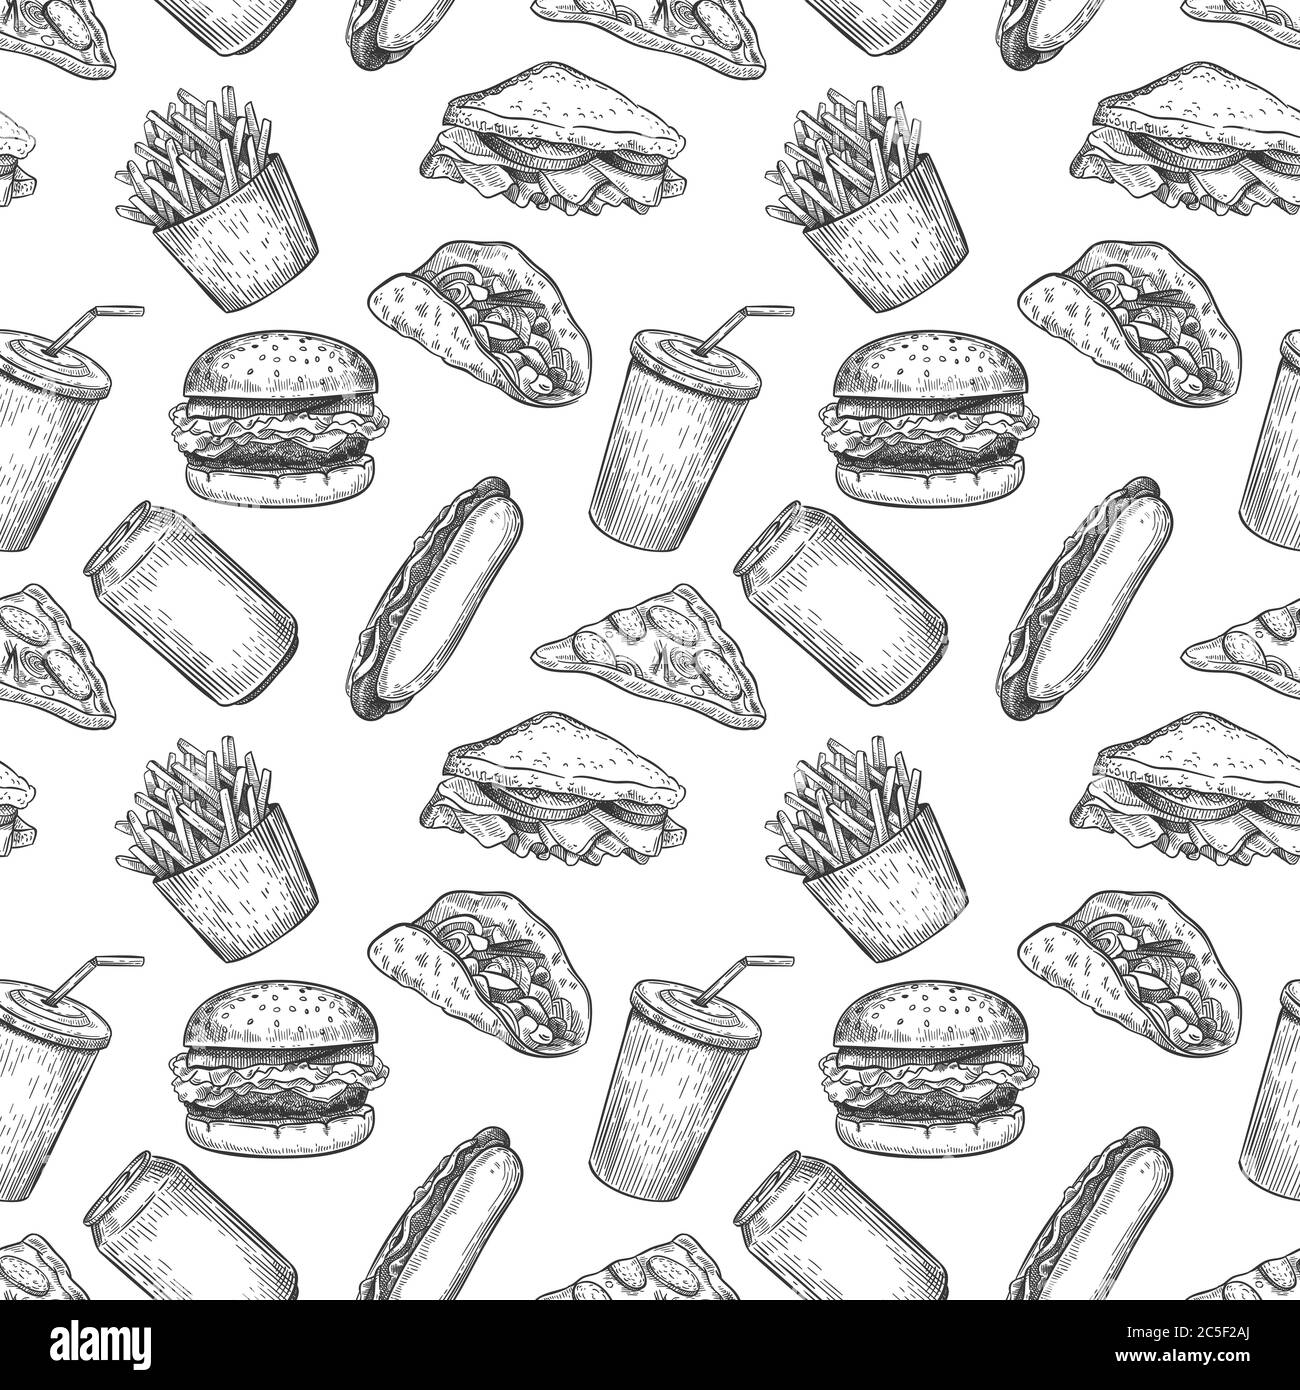 Fast Food Nahtloses Muster. Handgezeichnete Pizza, Burger und Pommes, Hot Dog, Hamburger und Cola für Fast Food-Menü Wallpaper Vektor-Textur Stock Vektor